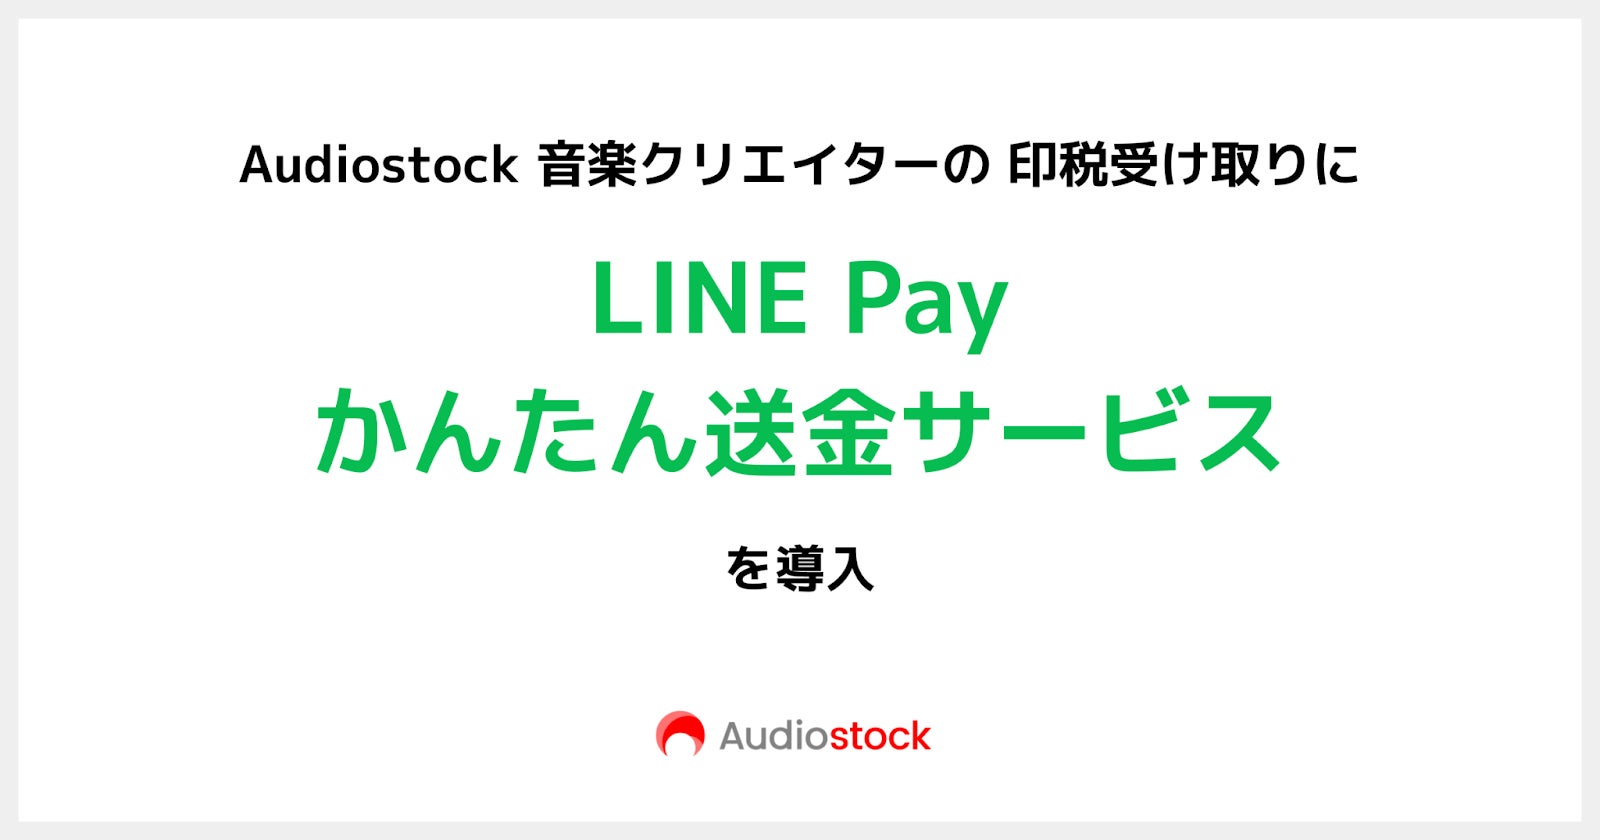 Audiostock 音楽クリエイターの印税受け取りに「LINE Pay かんたん送金サービス」を導入